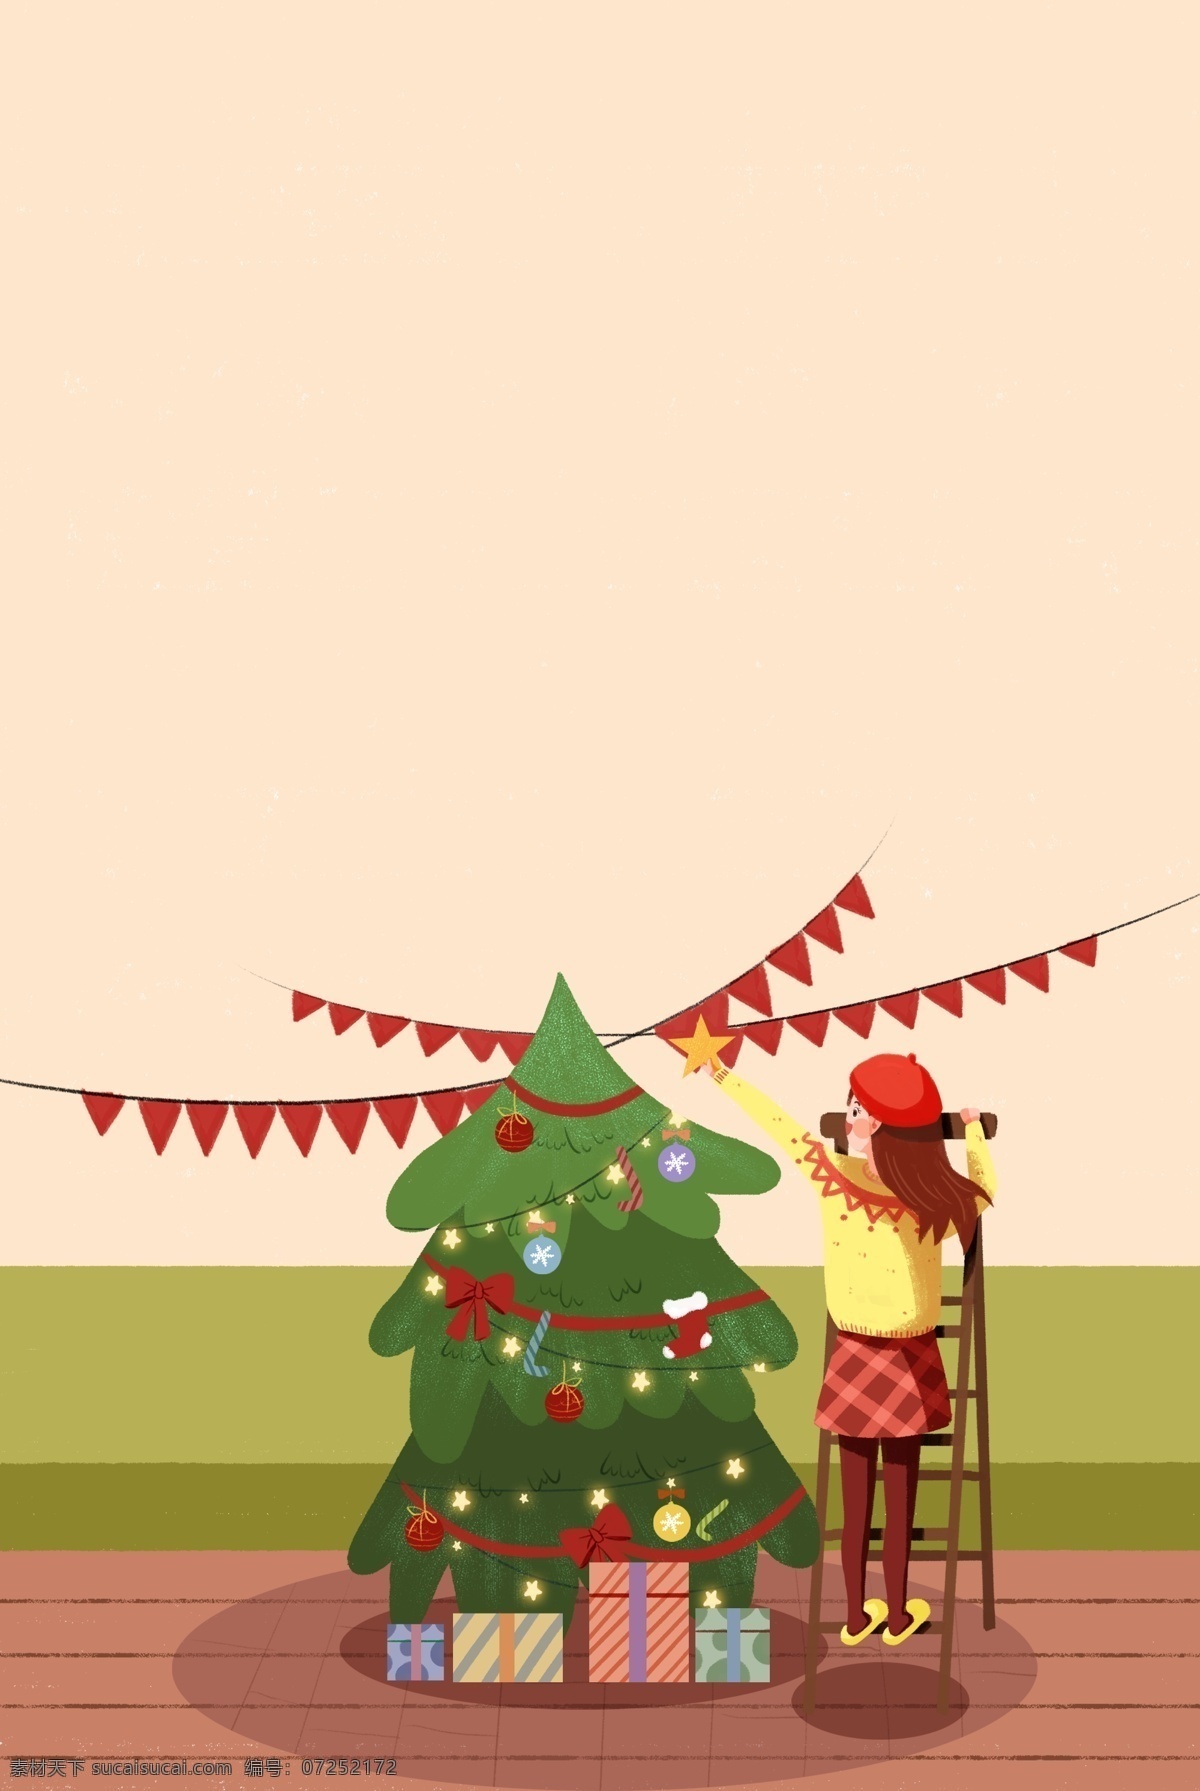 圣诞节 家中 装饰 女孩 插画 海报 圣诞树 圣诞礼物 温馨 家居 插画风 促销海报